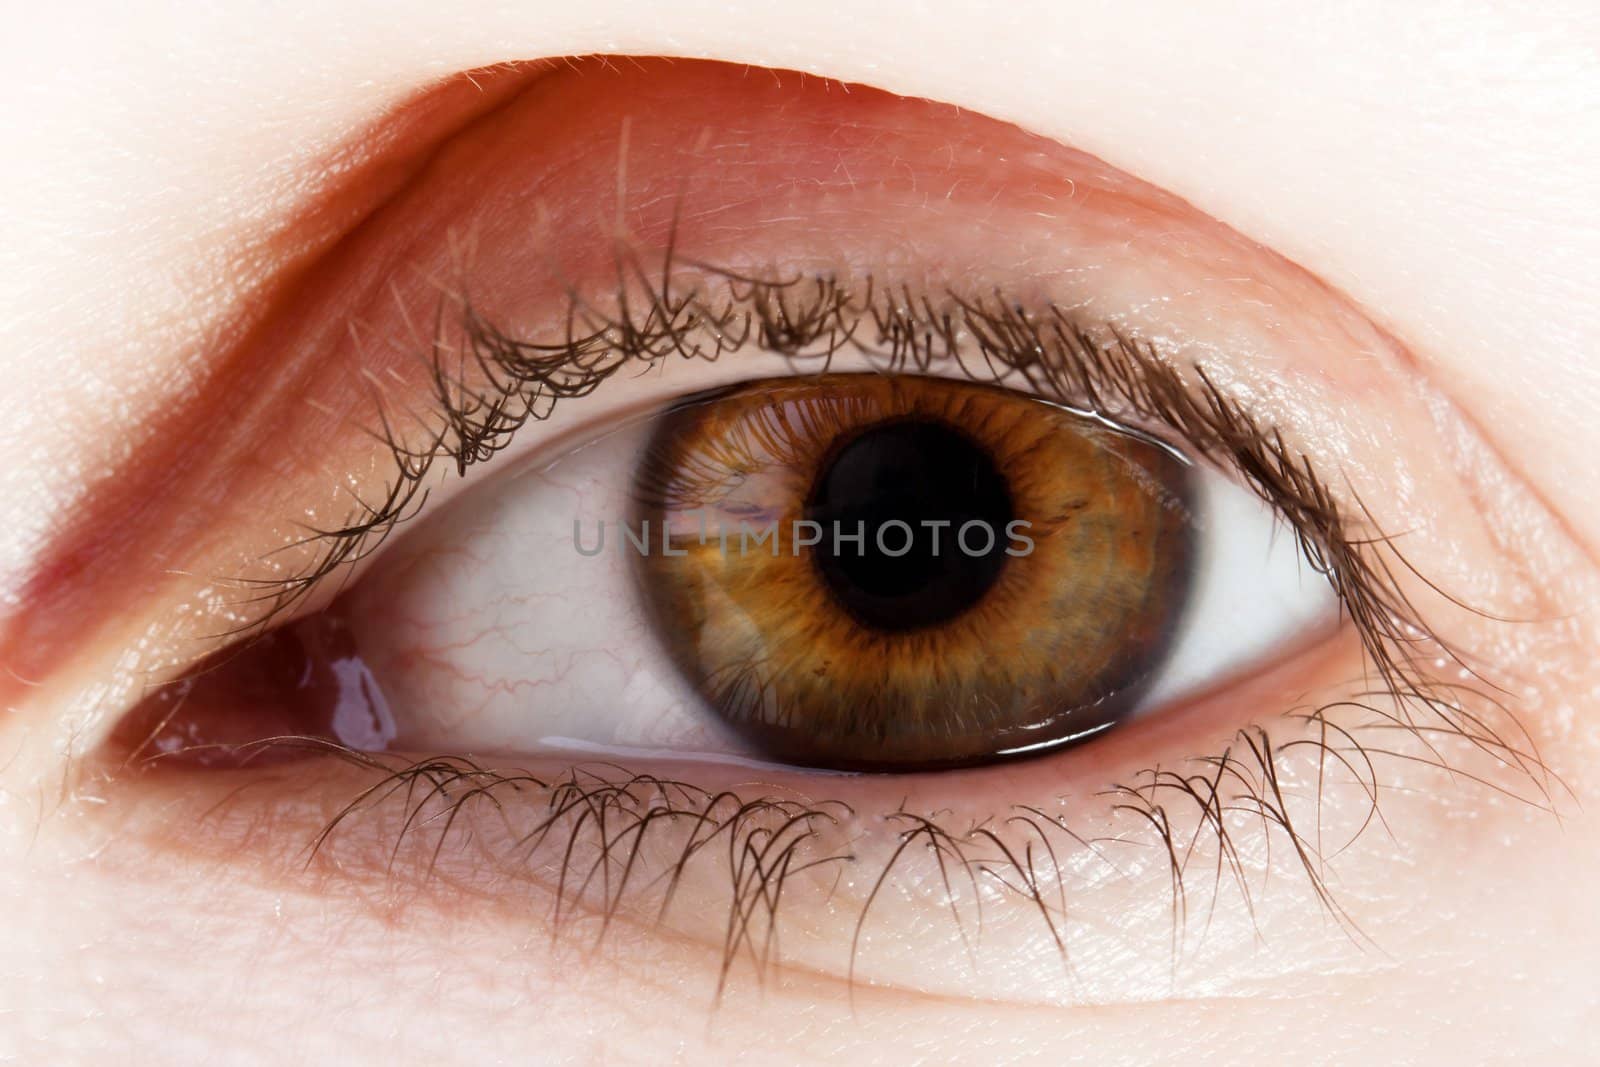 Human eye macro by ia_64